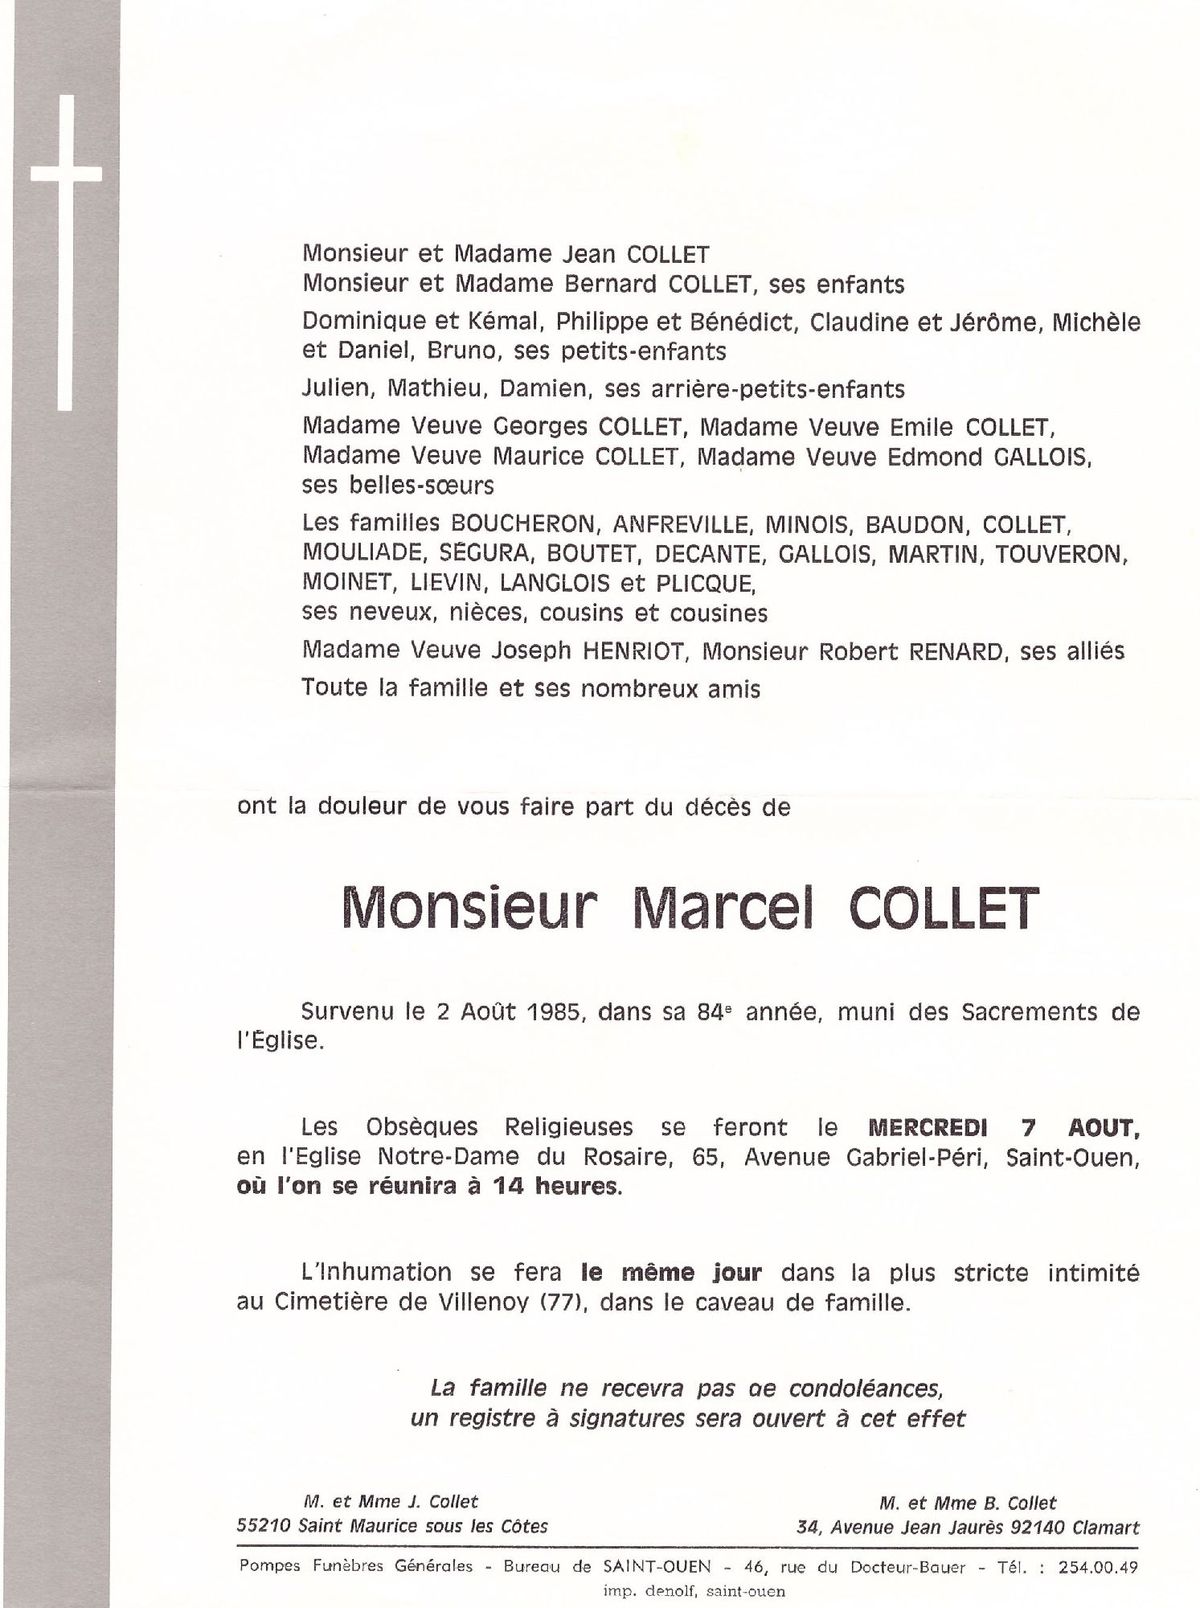 Marcel COLLET 02/08/1985